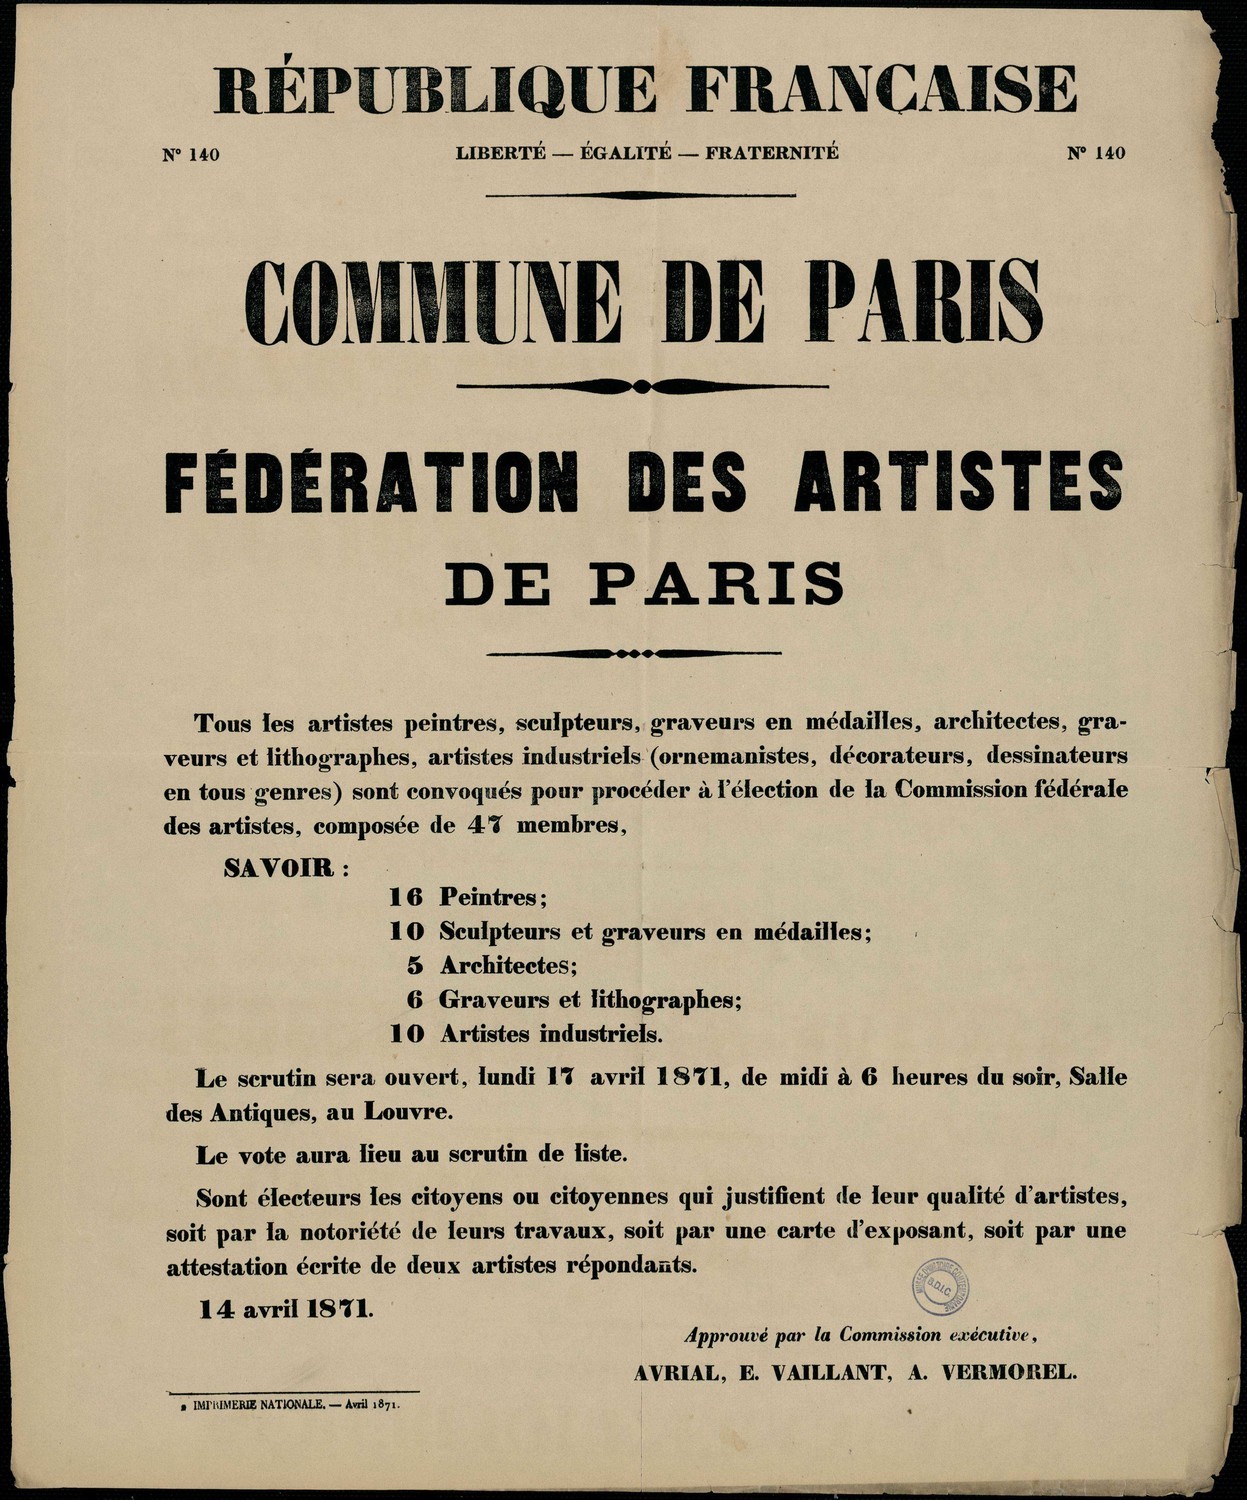 Affiche de la Commune de Paris N° 140 du 14 avril 1871 - Création de la Fédération des artistes par Courbet (source : La Contemporaine – Nanterre / argonnaute.parisnanterre.fr)